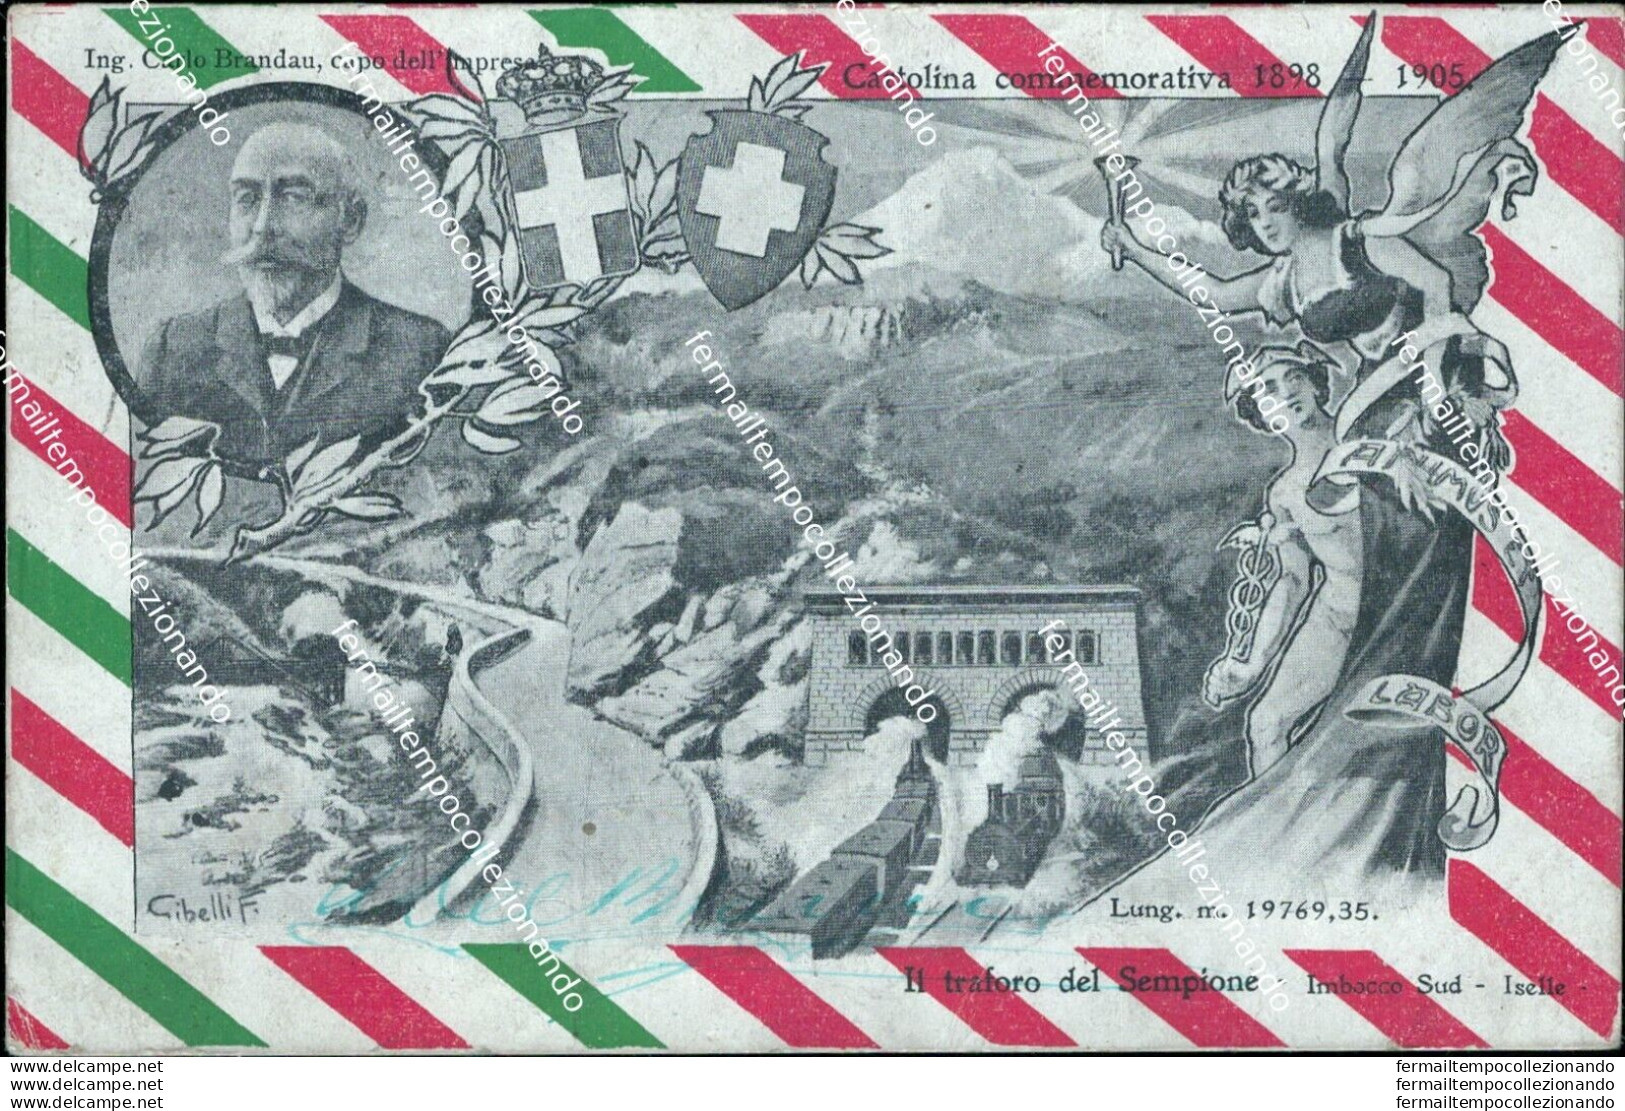 Bq284 Cartolina Commemorativa 1898 1905 Traforo Del Sempione - Biella